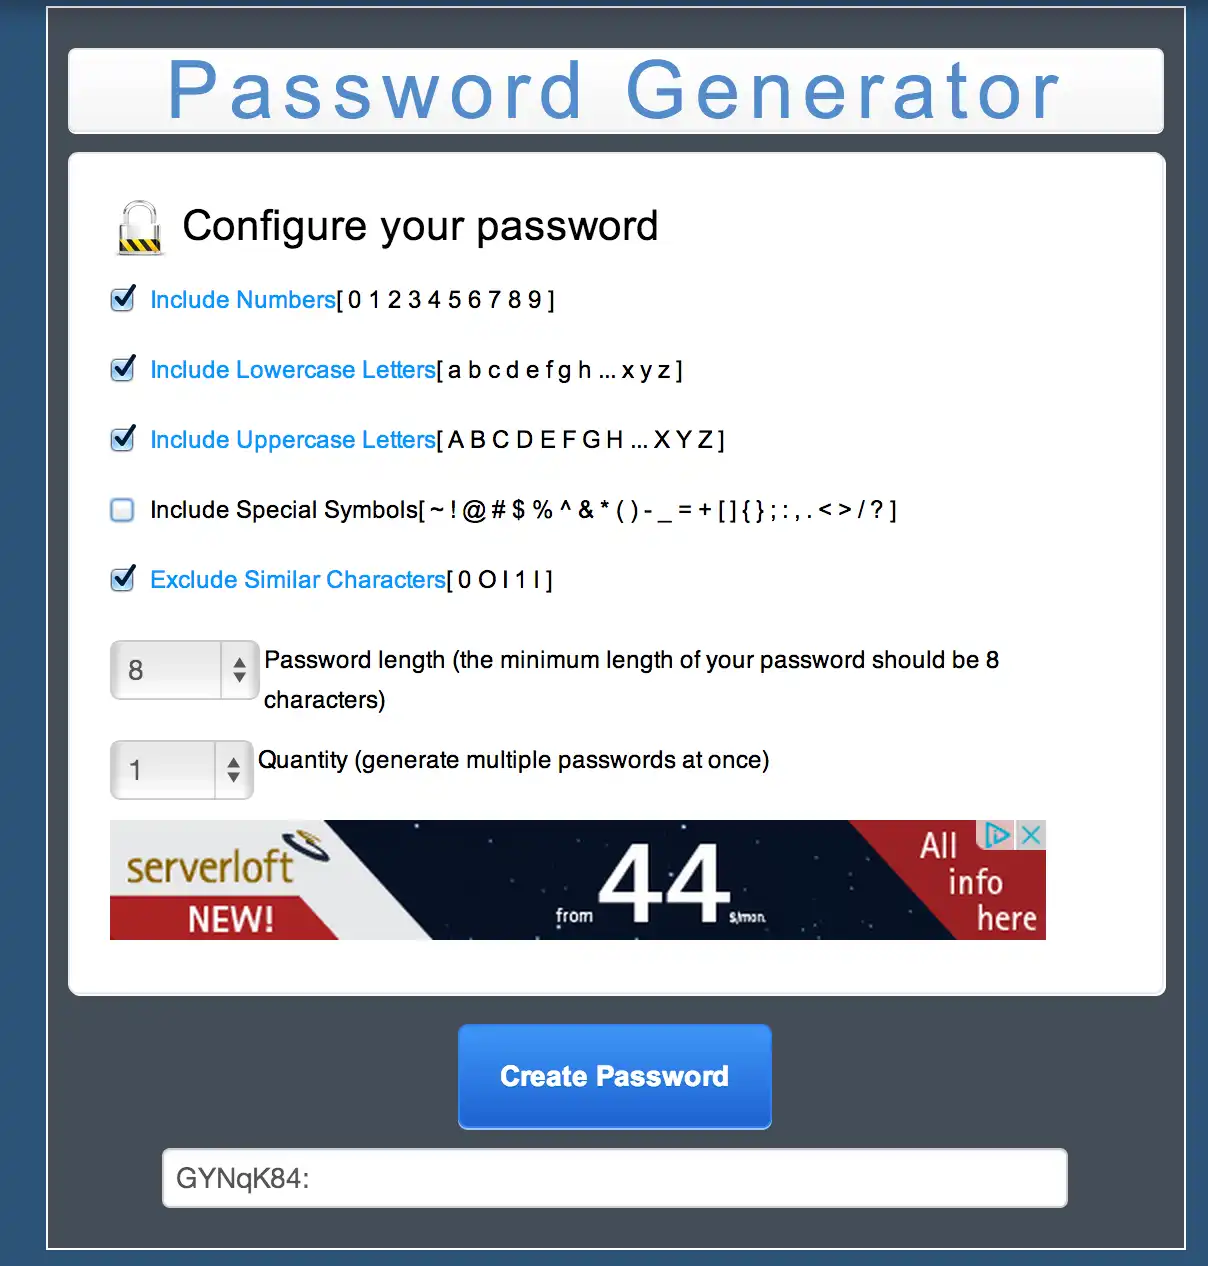 قم بتنزيل أداة الويب أو تطبيق الويب MC Password Generator